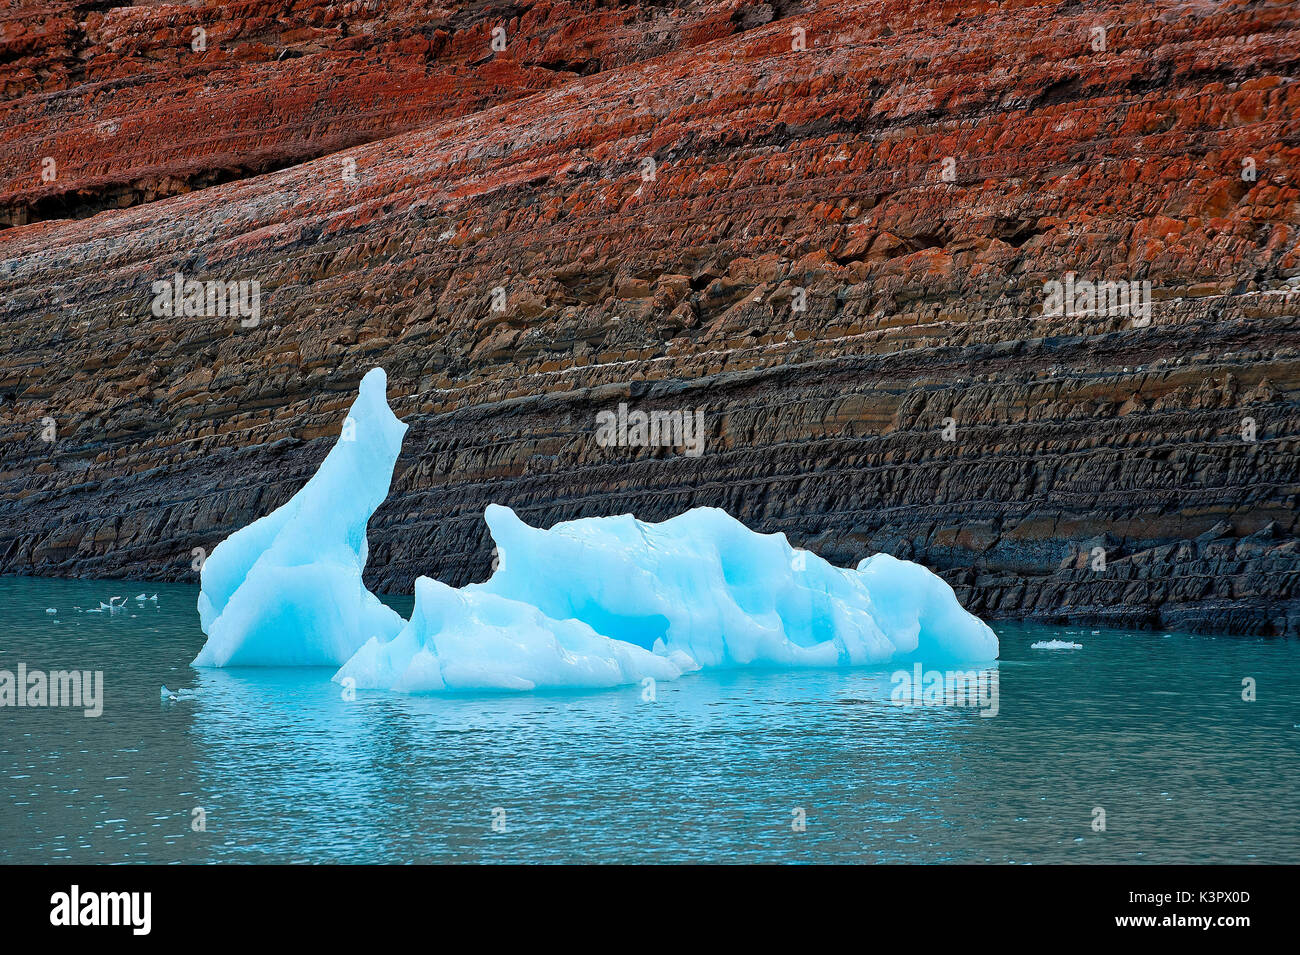 Le lac Argentino, le Parc National Los Glaciares, Patagonie, Argentine, Amérique du Sud. Petit iceberg. Banque D'Images